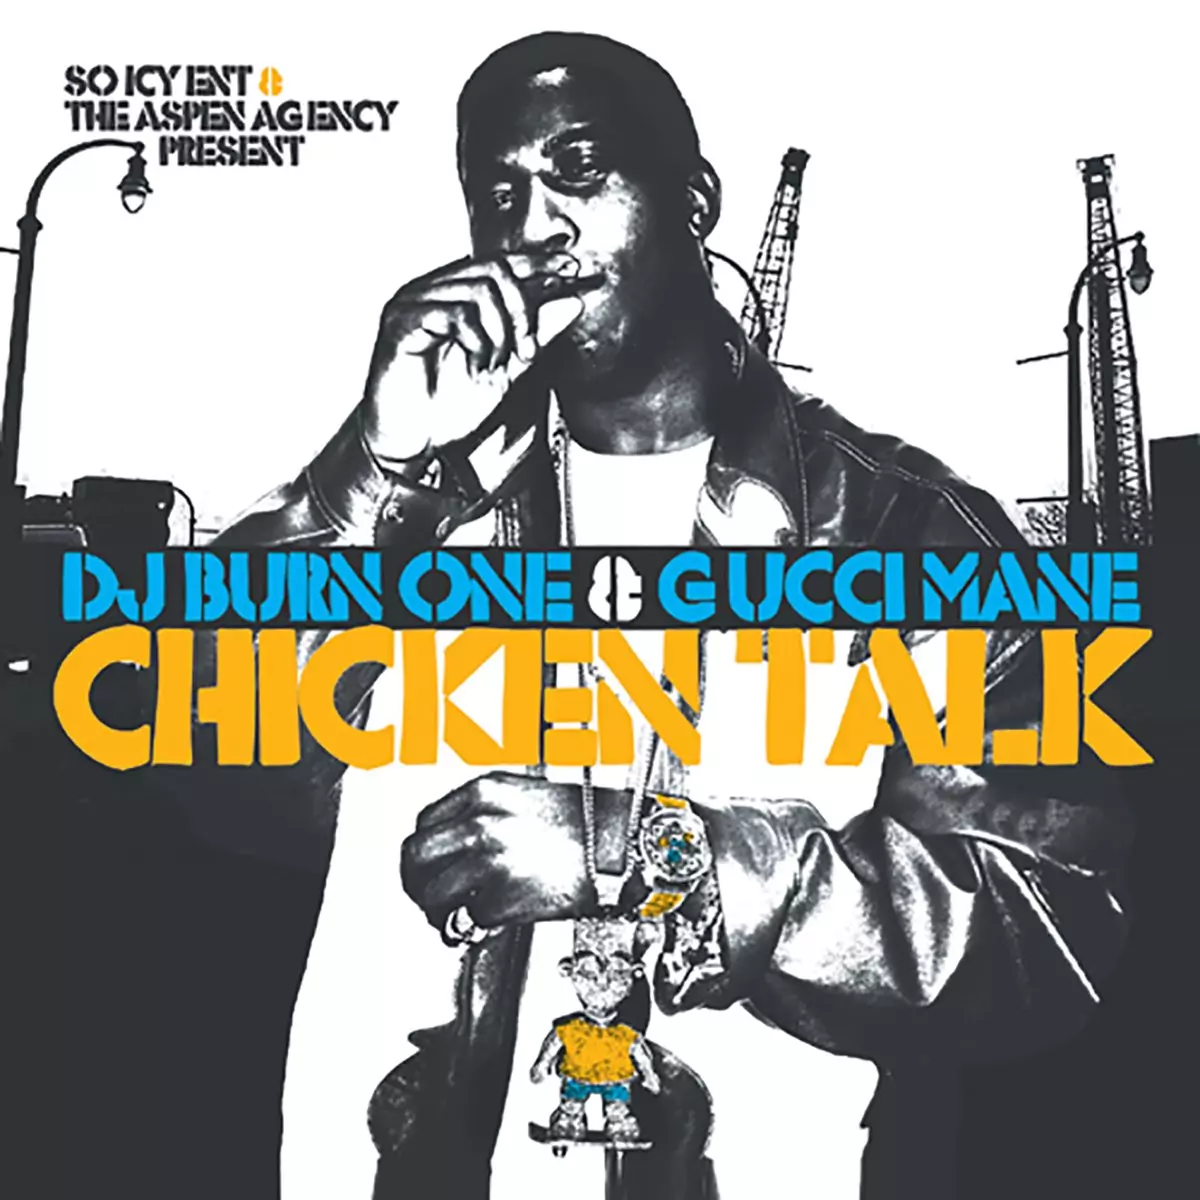 Chicken Talk - Album by Gucci Mane - Apple Music